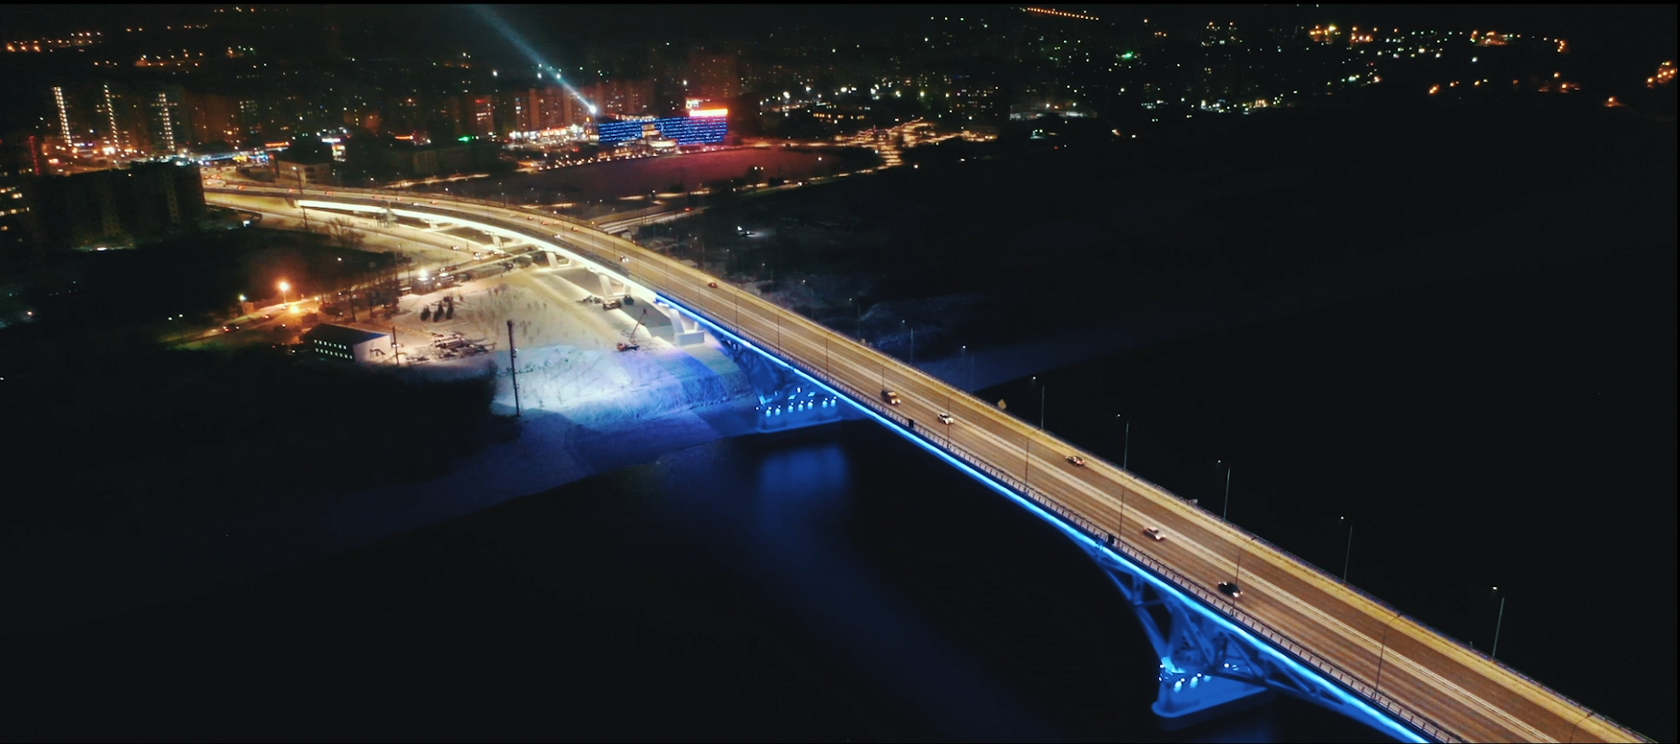 Архитектурное освещение мостов